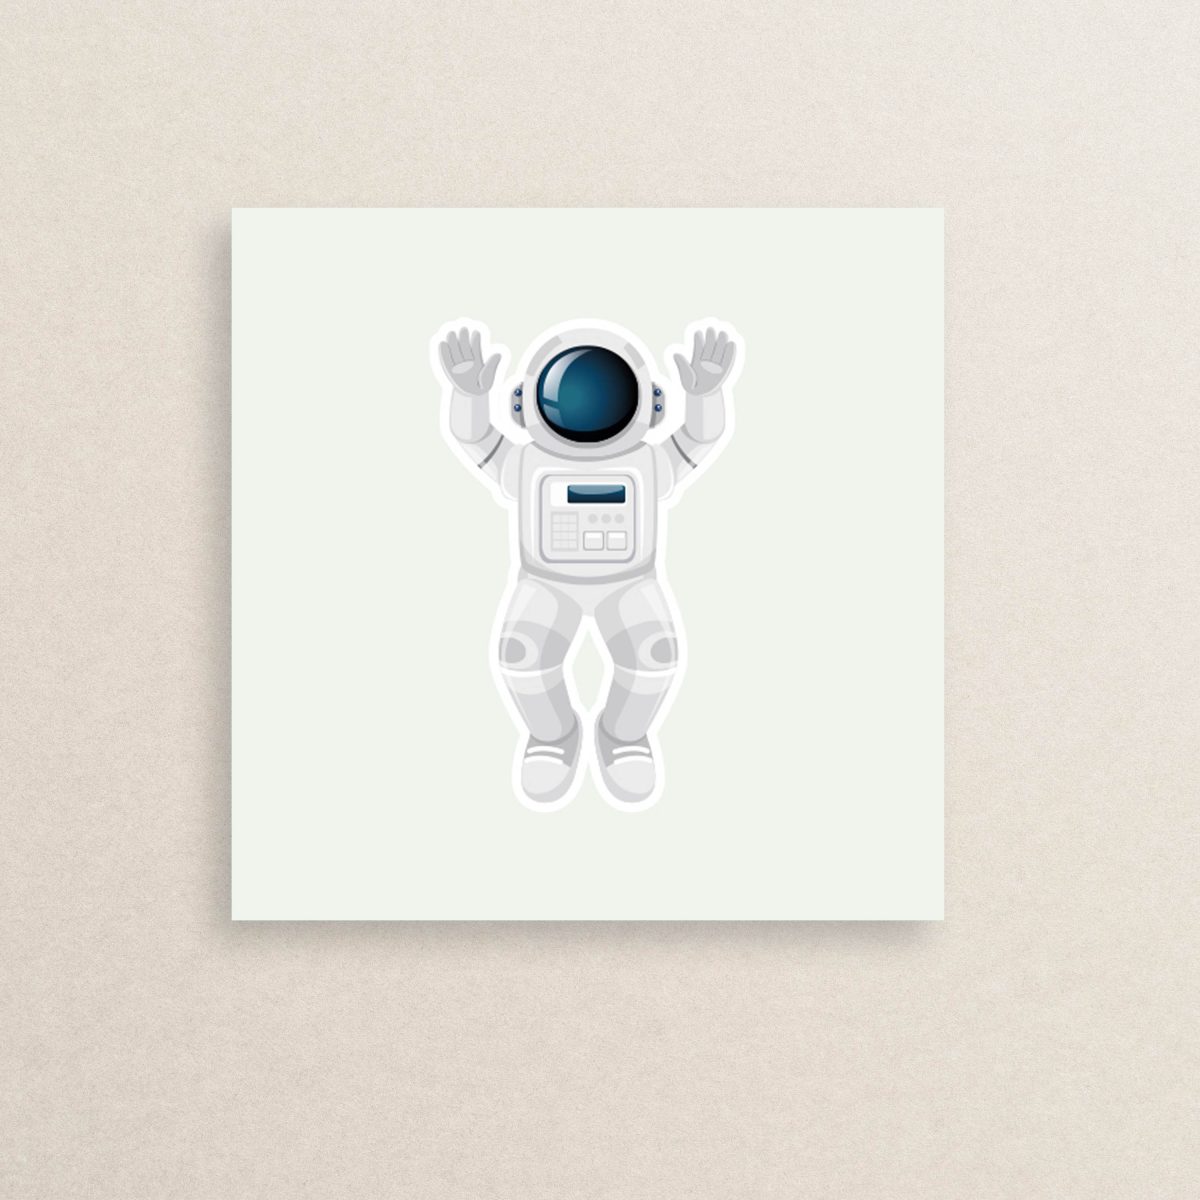 استیکر فضانورد 01 | Astronaut sticker 01